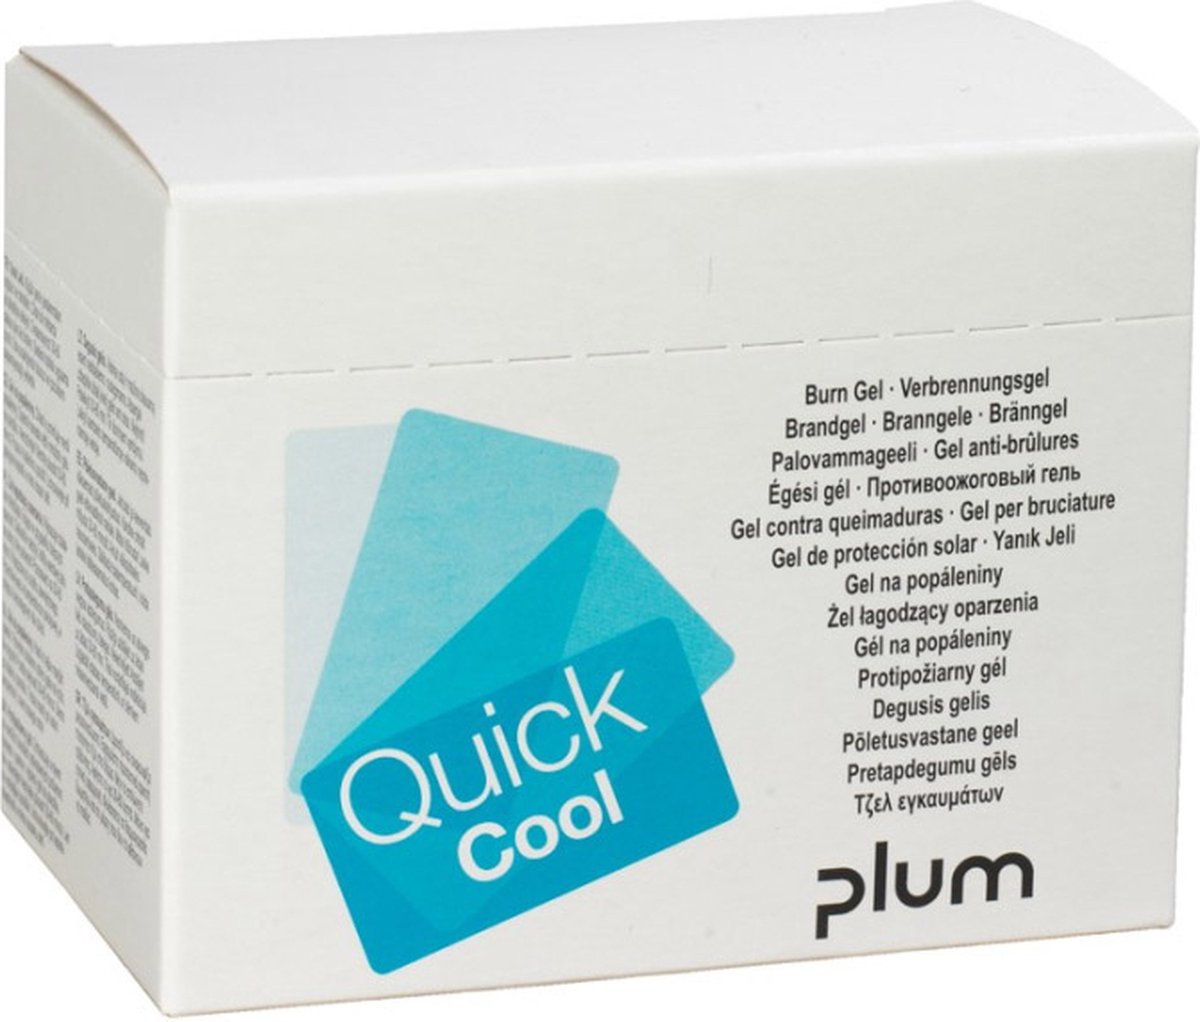 Plum Quick cool - Burn gel - doosje 18 stuks brandwondengel 3,5 gram - Plum Quickfix